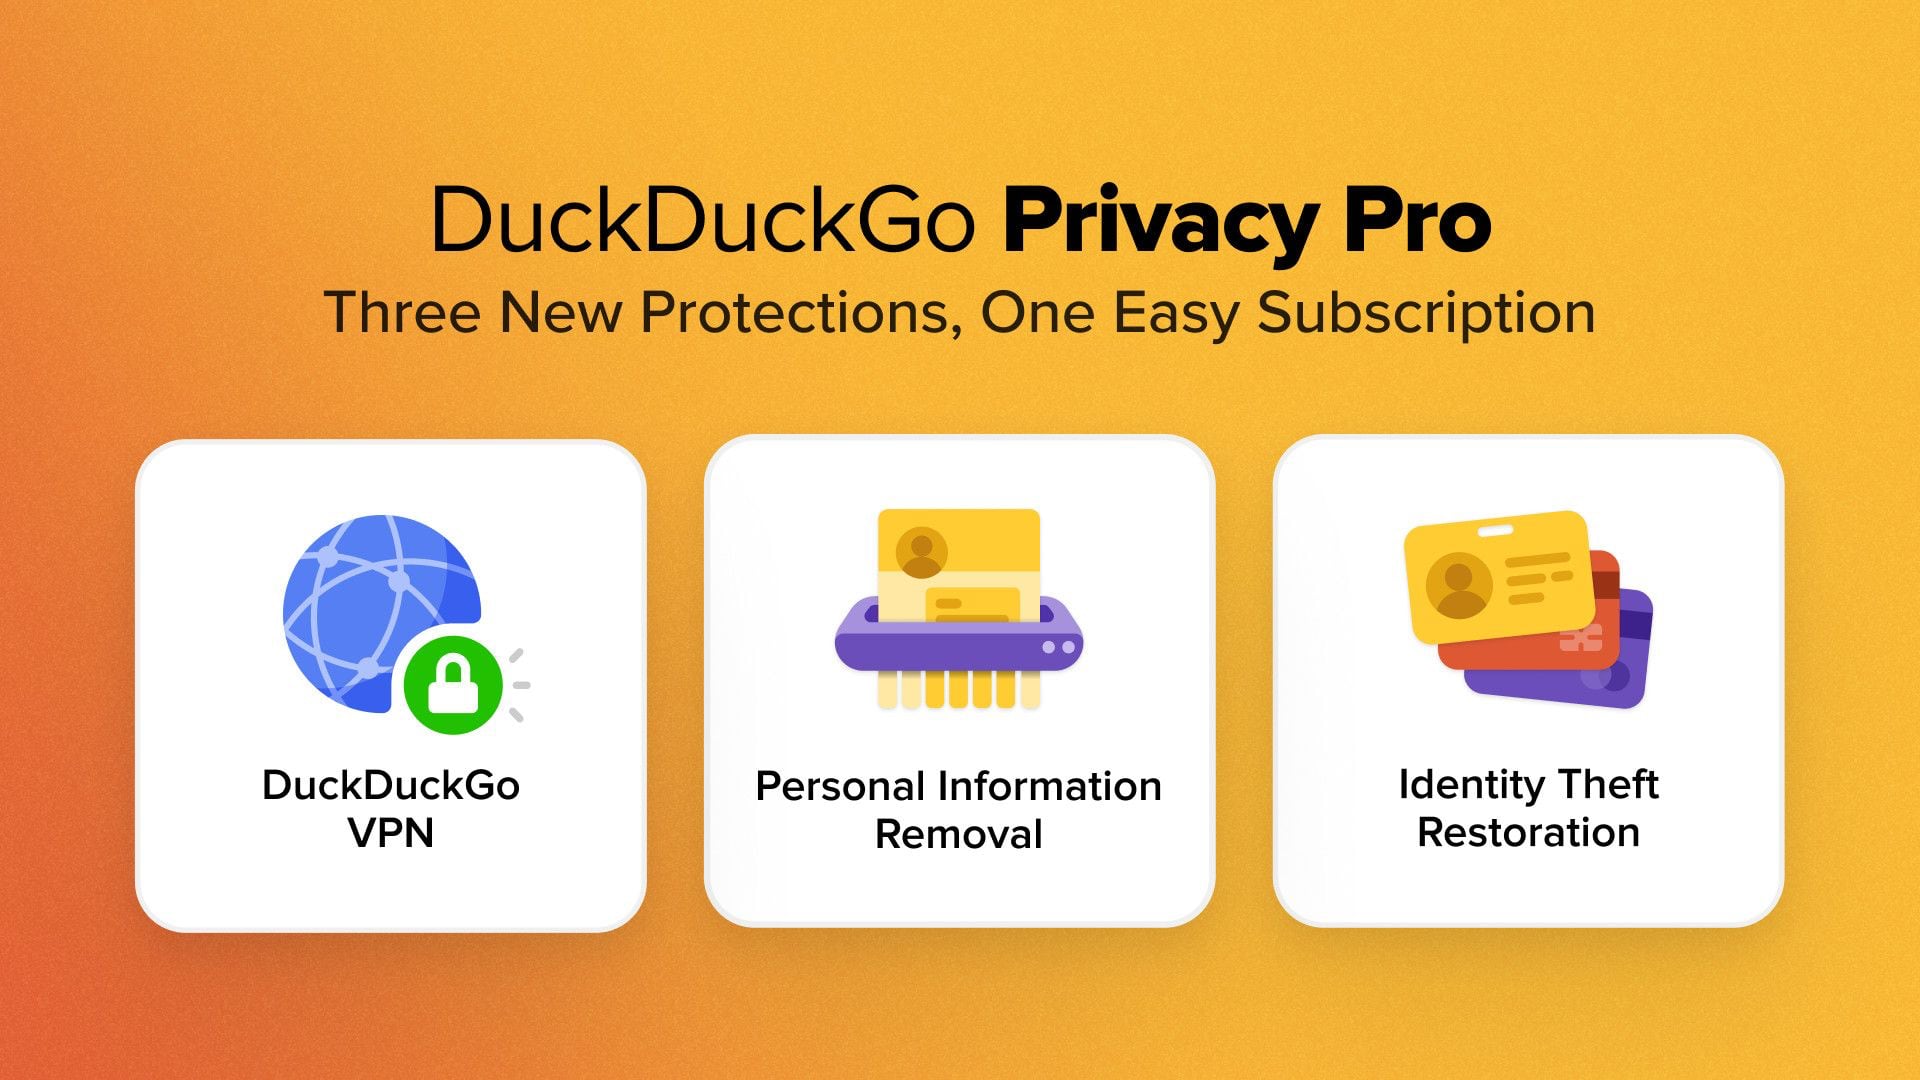 duckduckgo-privacy-pro.jpg